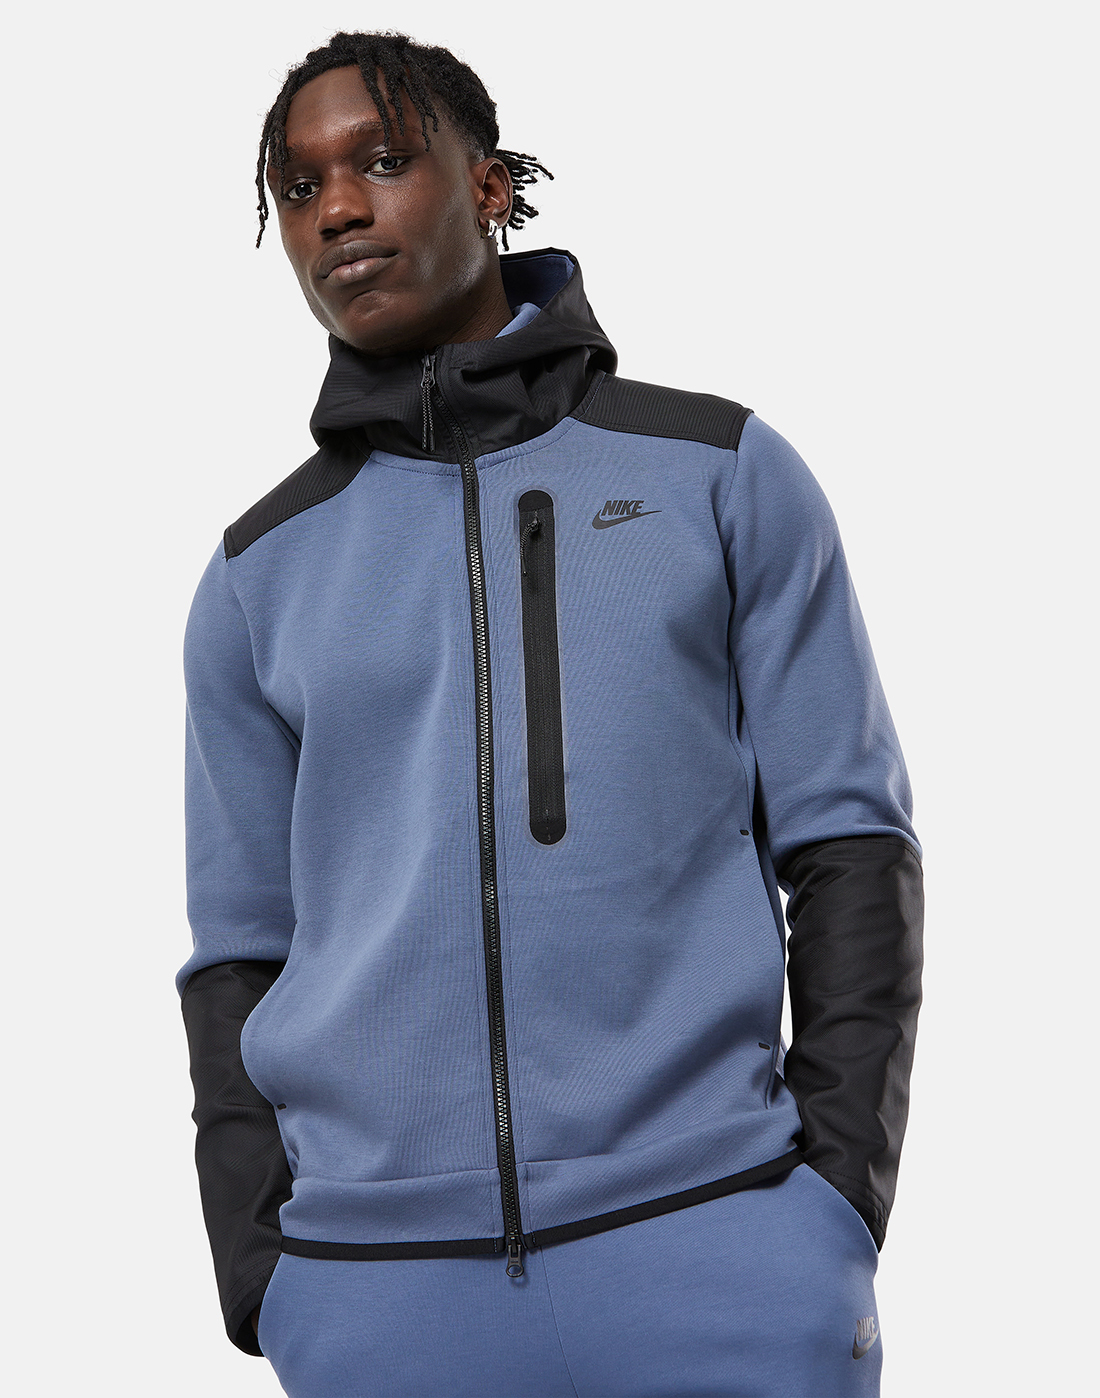 Nike Mens Tech Fleece Overlay Full Zip Hoodie - Grey | Life Style Sports UK